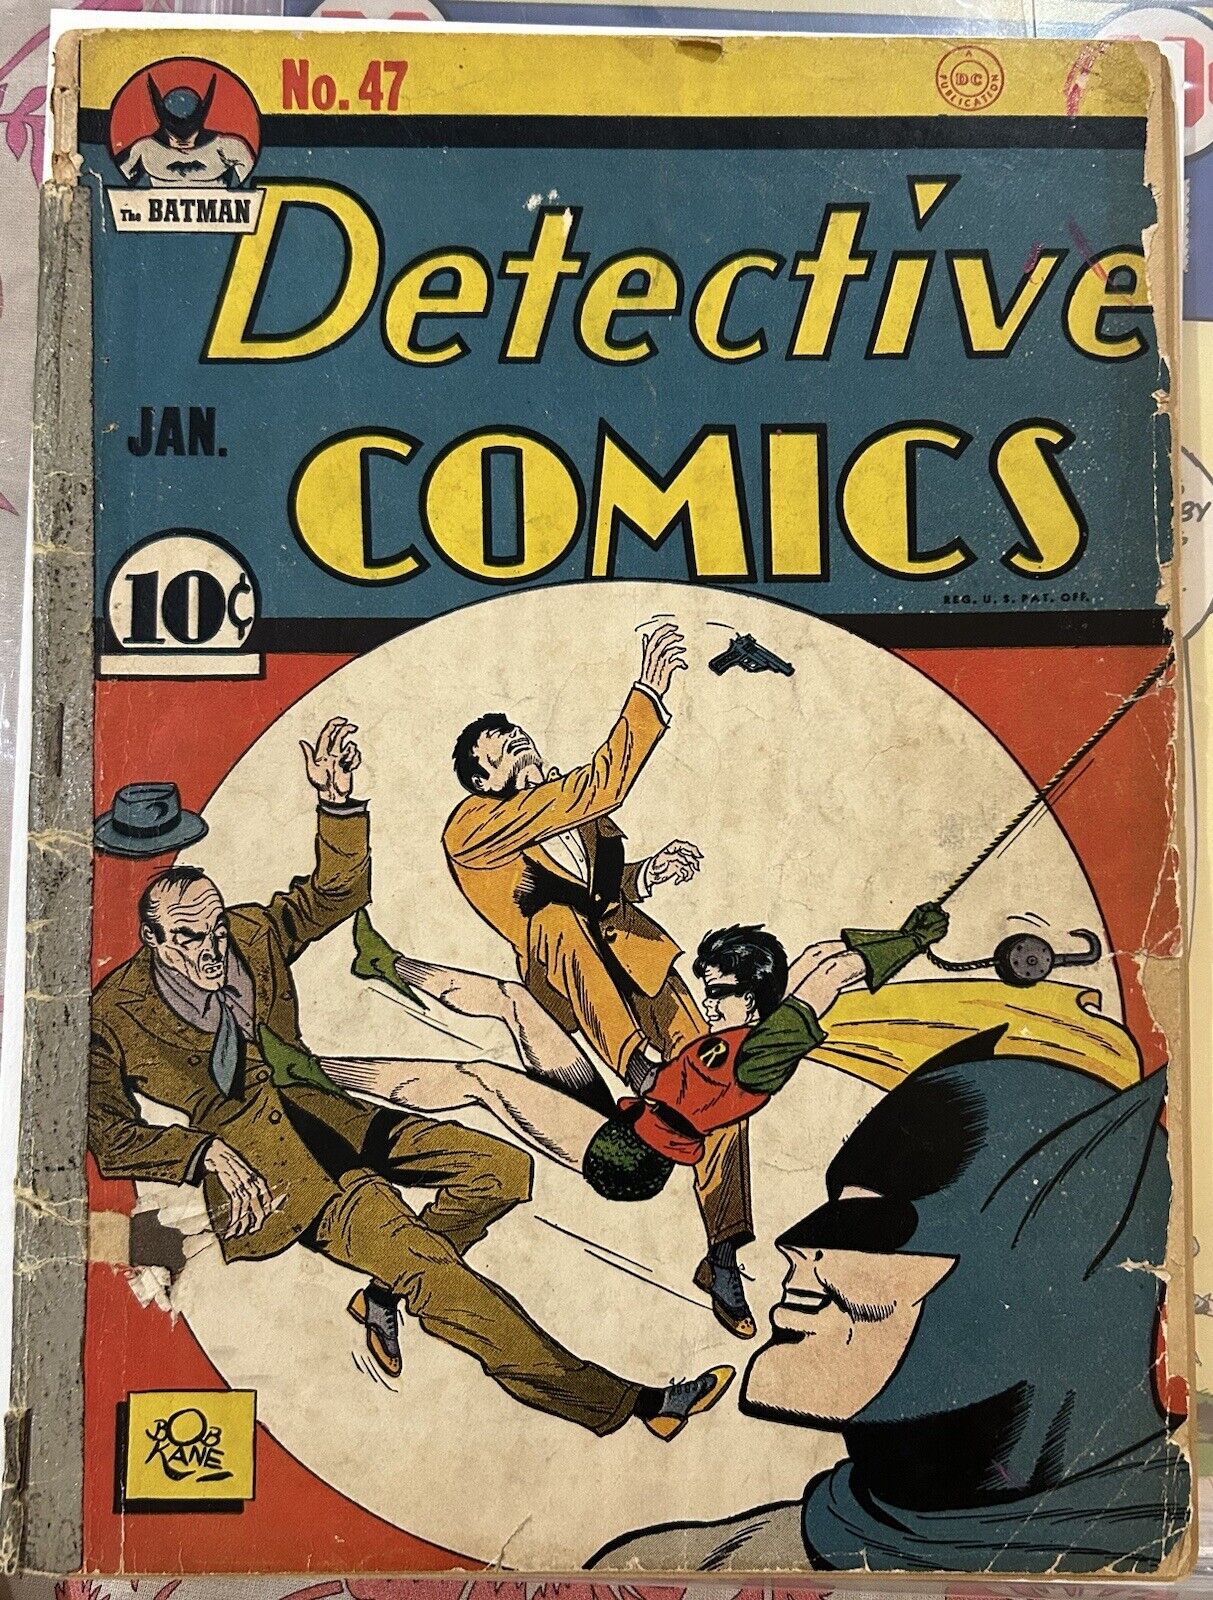 1941 DETECTIVE COMICS #47 BATMAN Low Grade Qualified